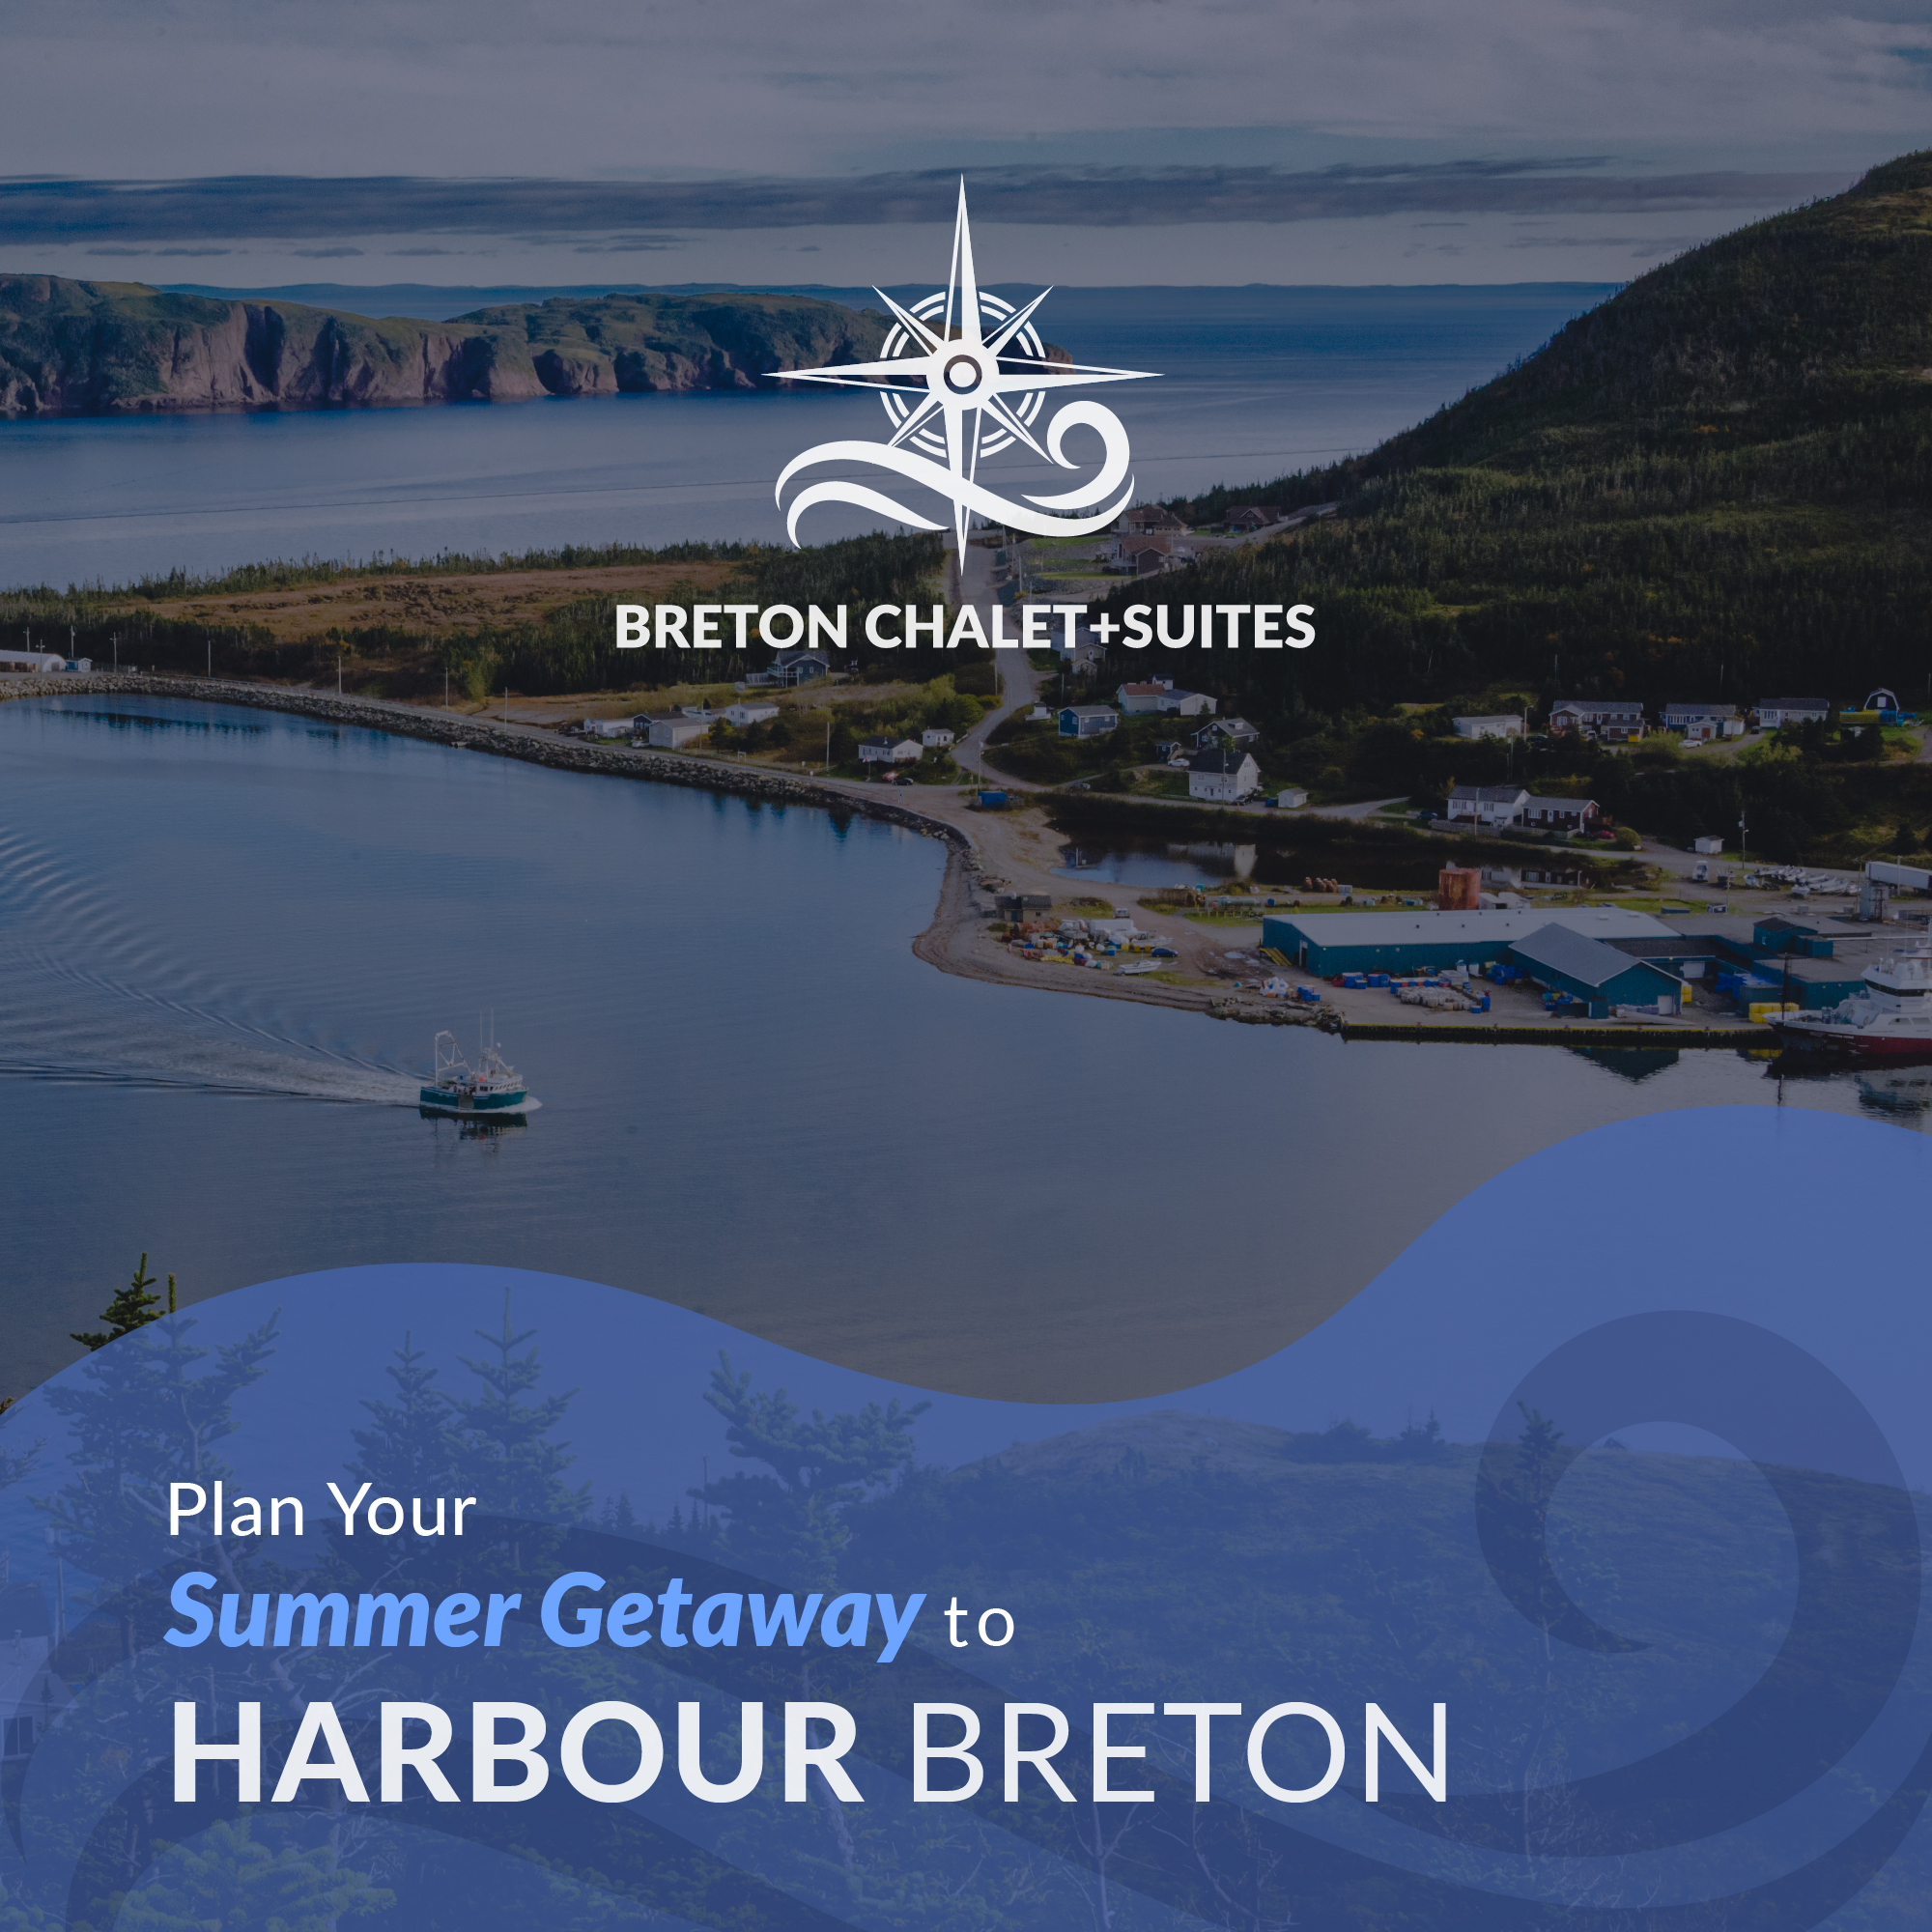 Harbour Breton